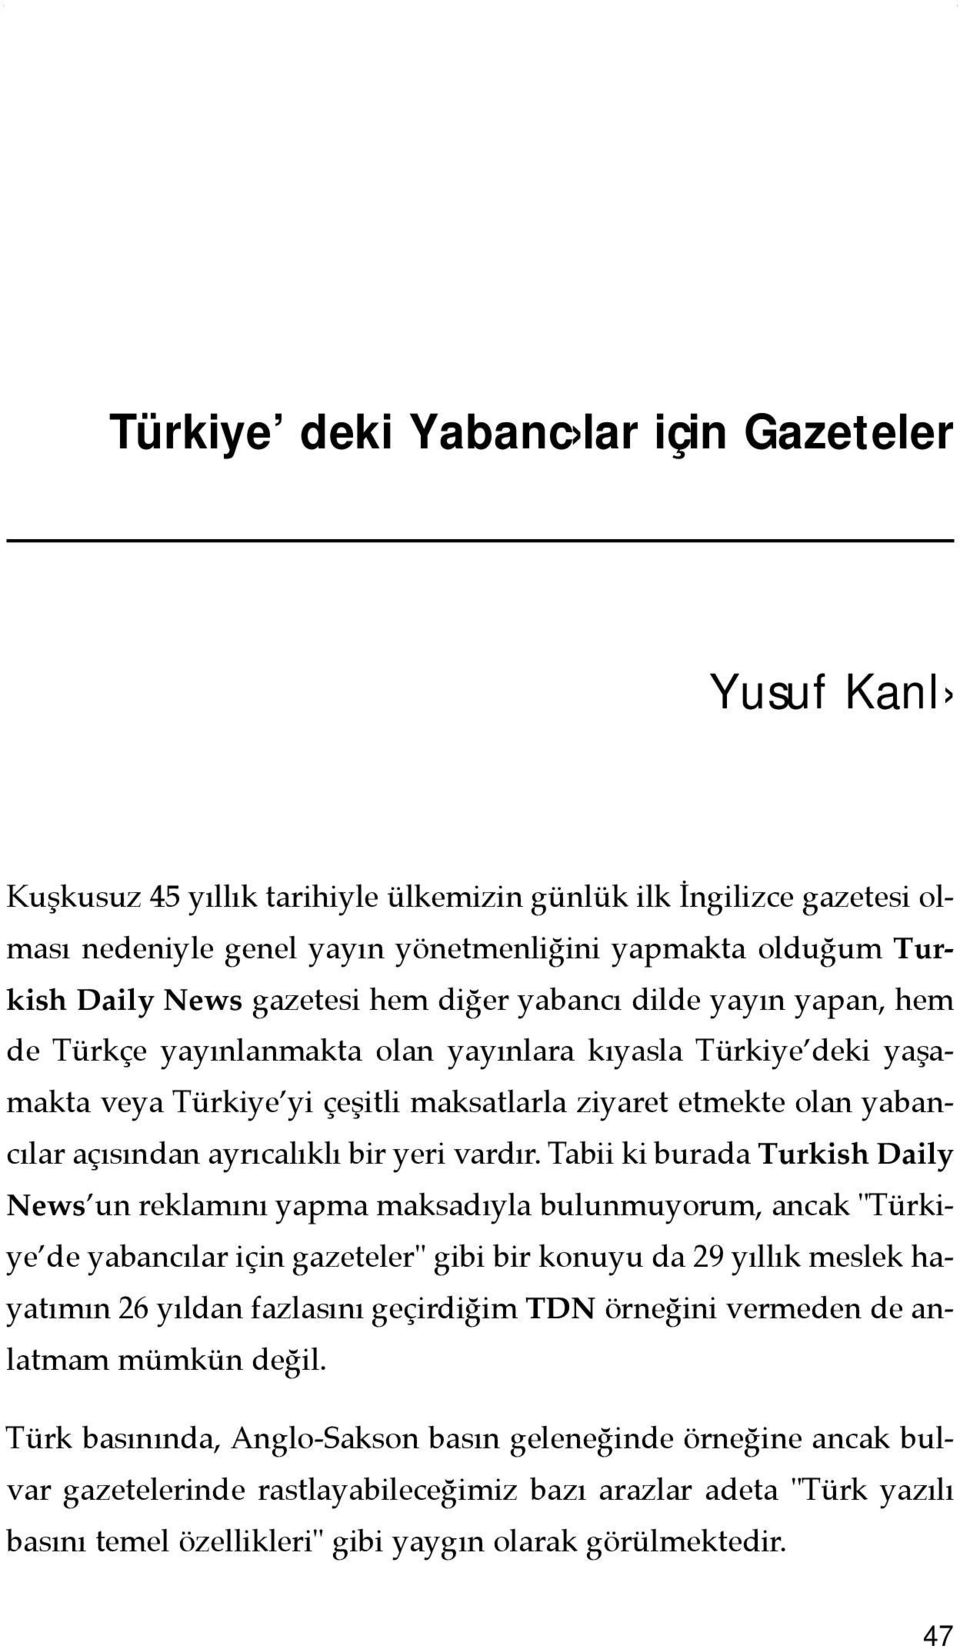 Tabii ki burada Turkish Daily News un reklamõnõ yapma maksadõyla bulunmuyorum, ancak "Türkiye de yabancõlar için gazeteler" gibi bir konuyu da 29 yõllõk meslek hayatõmõn 26 yõldan fazlasõnõ